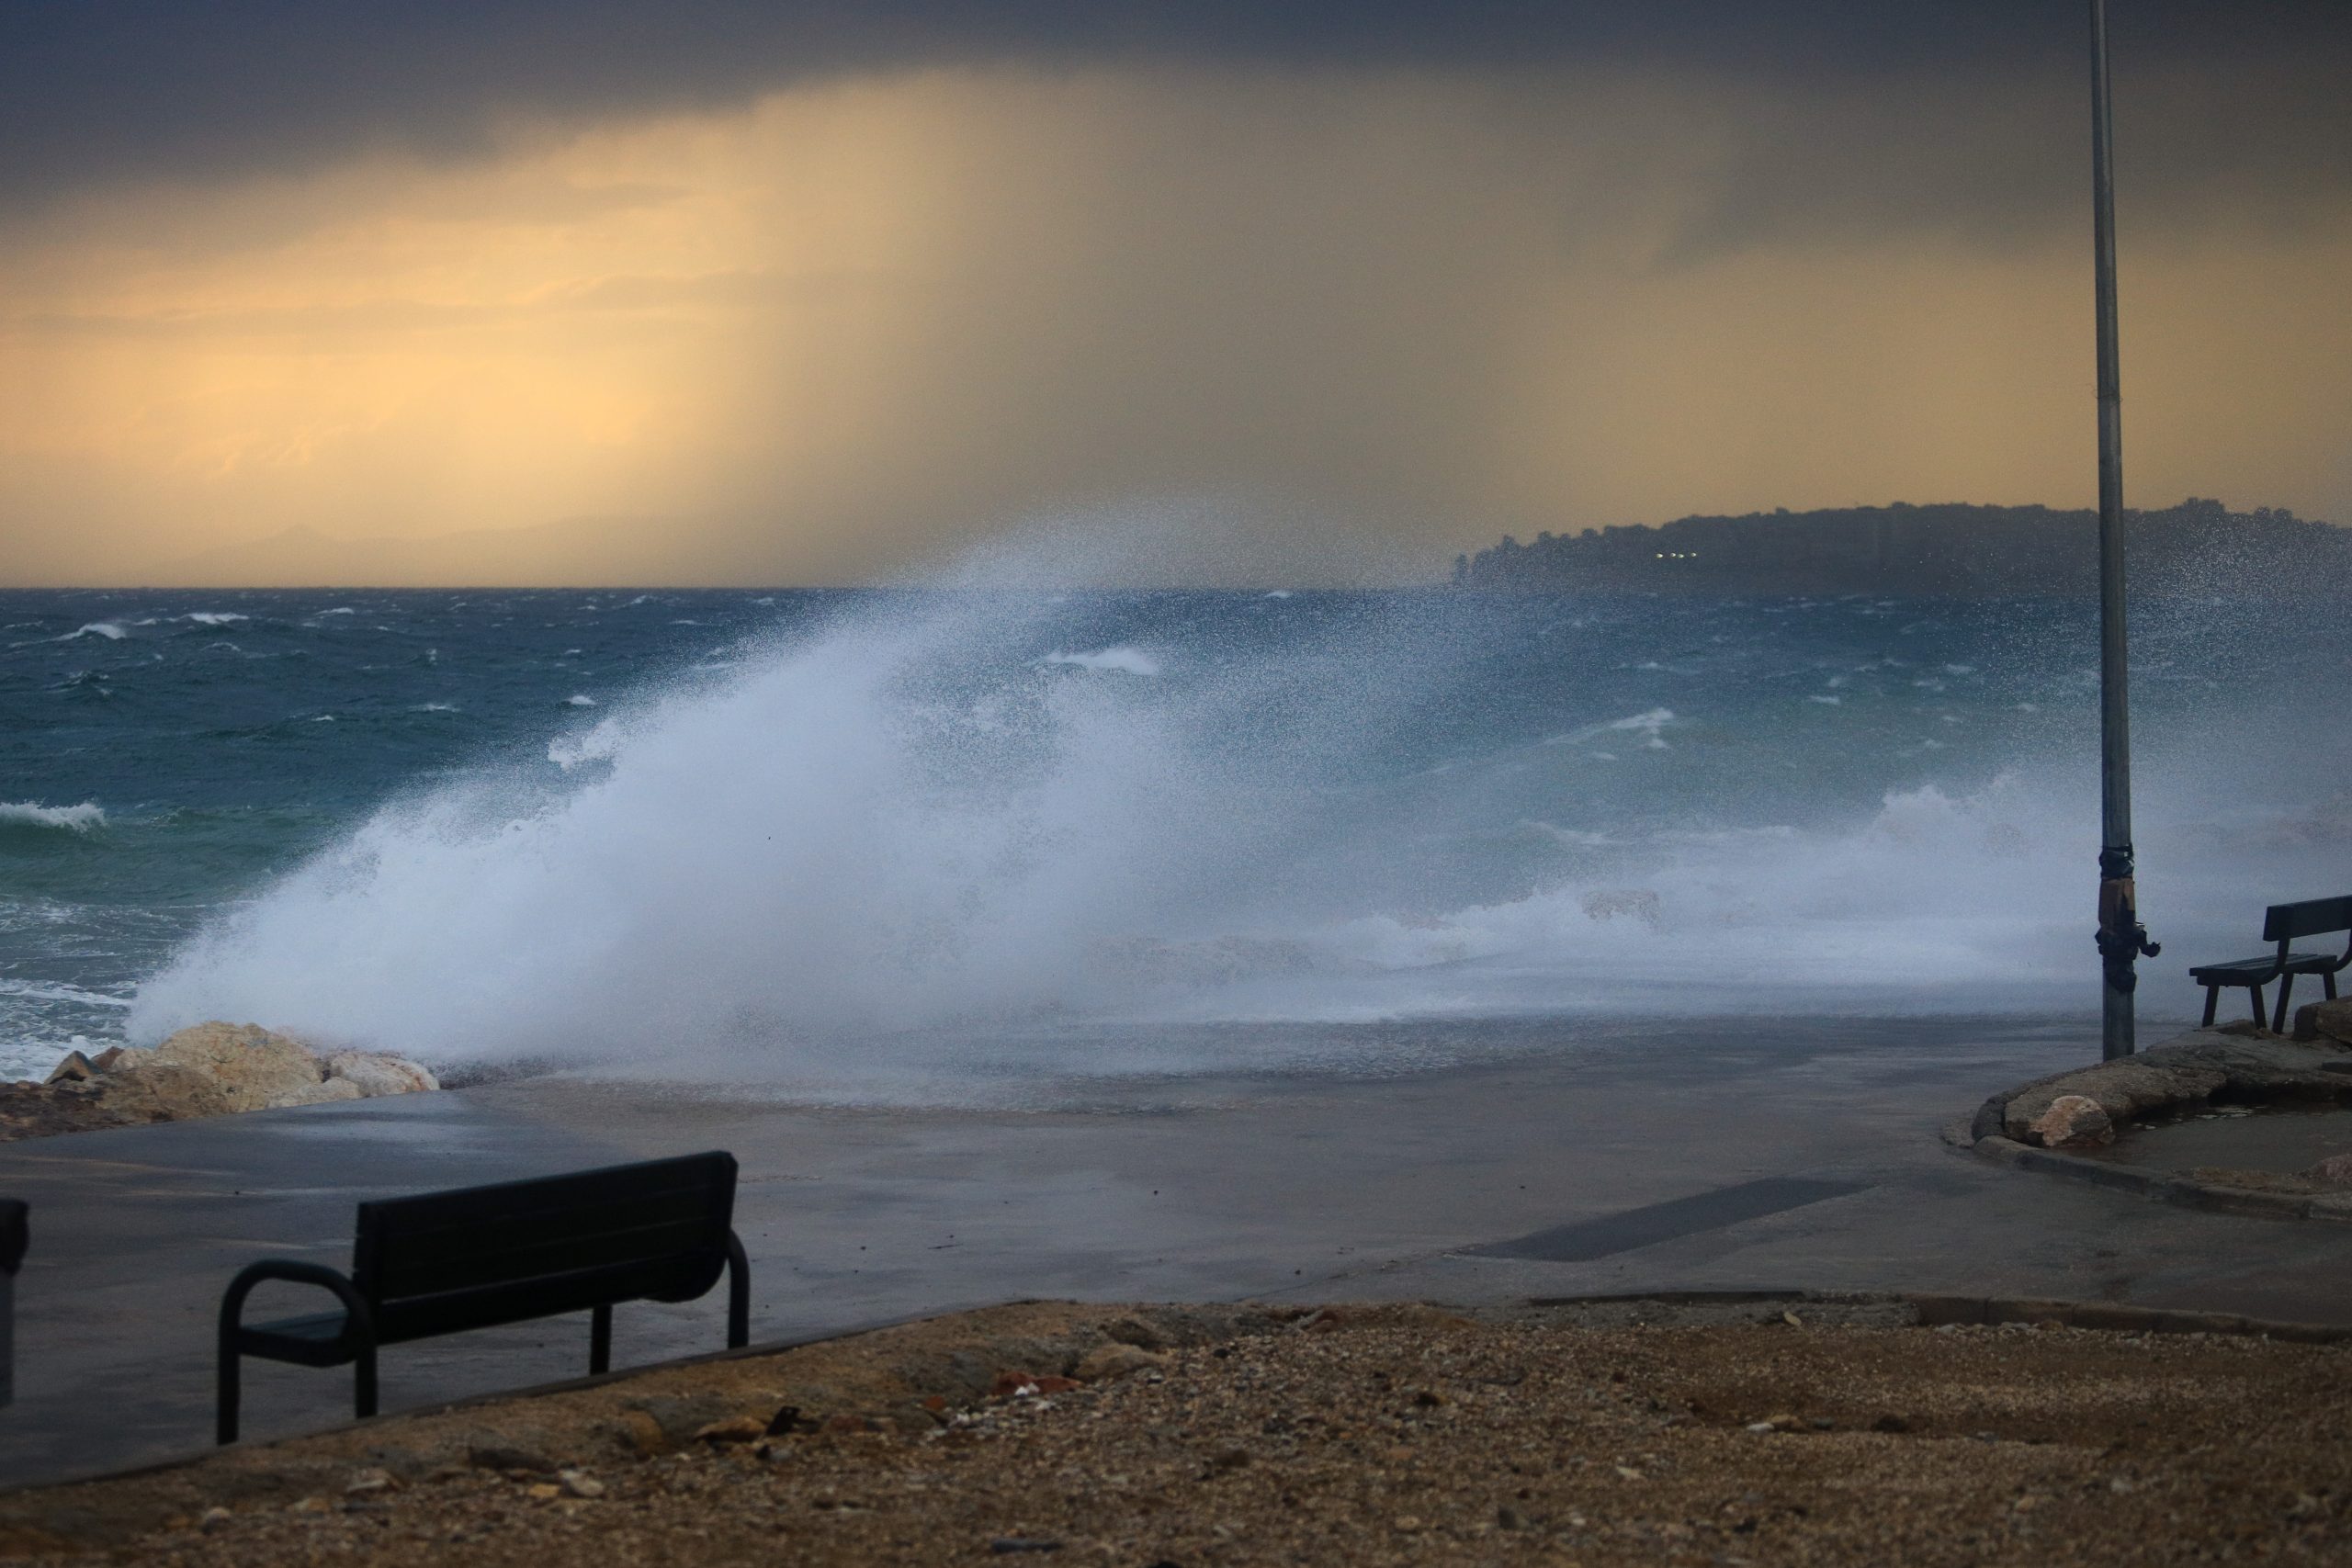 Καιρός: Η πορεία του μεσογειακού κυκλώνα «Νέαρχος» – Πότε φτάνει στην Ελλάδα (φωτο)